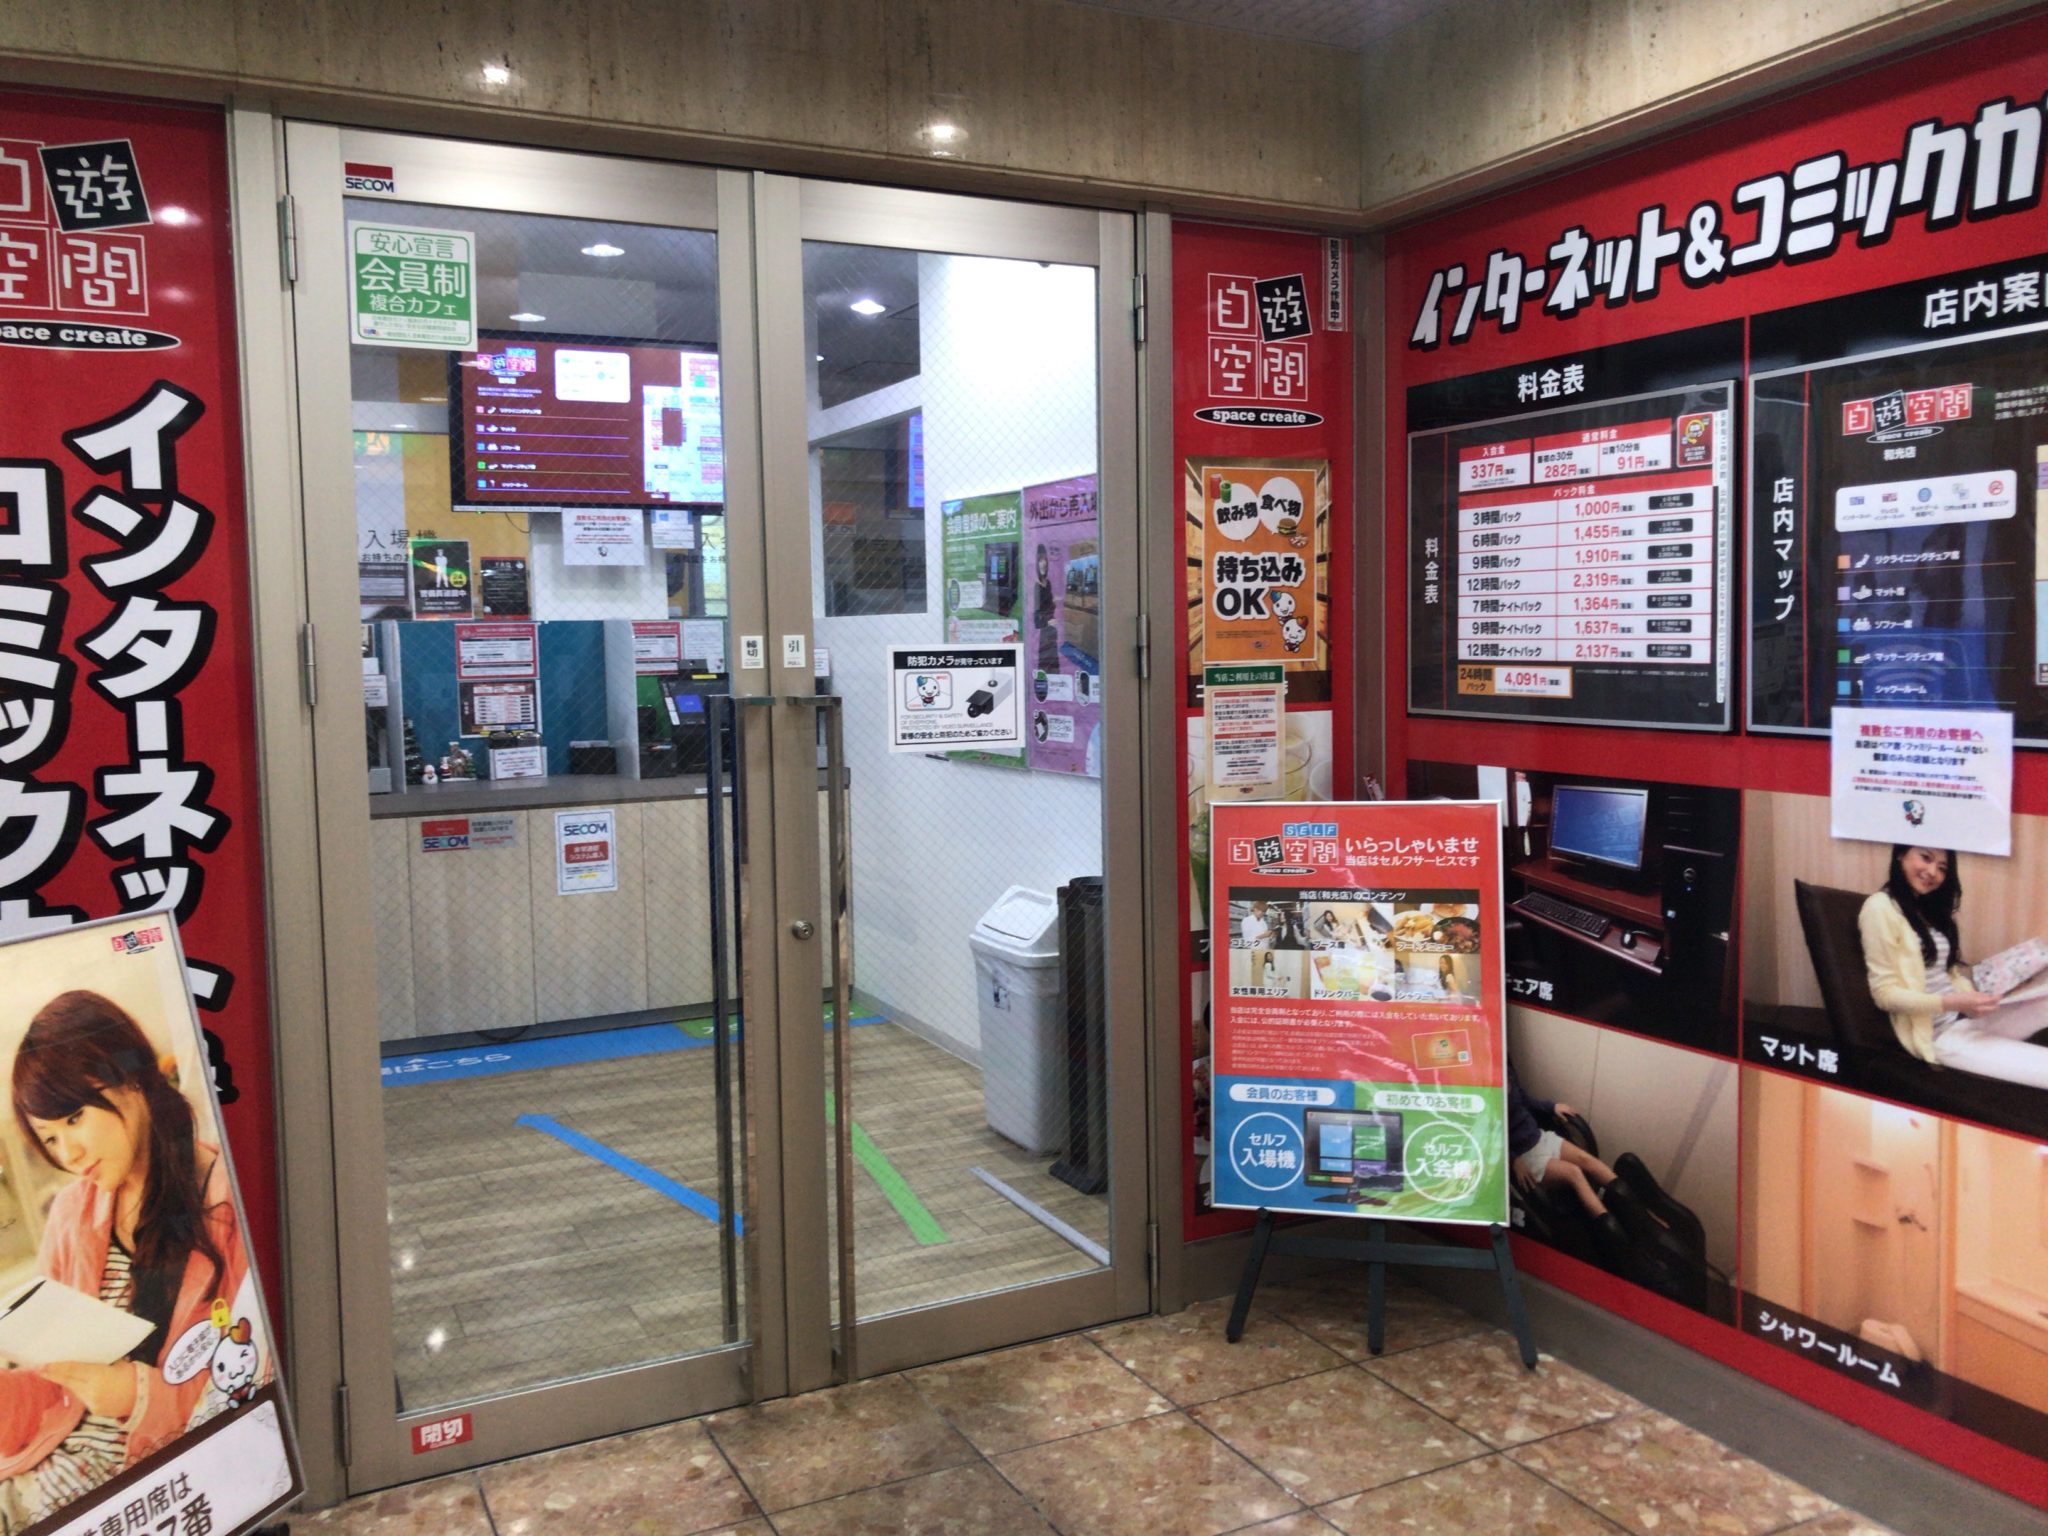 和光市駅から徒歩2分 自遊空間 和光店をレポート 日本全国のネカフェ 漫画喫茶マップのヒマップ